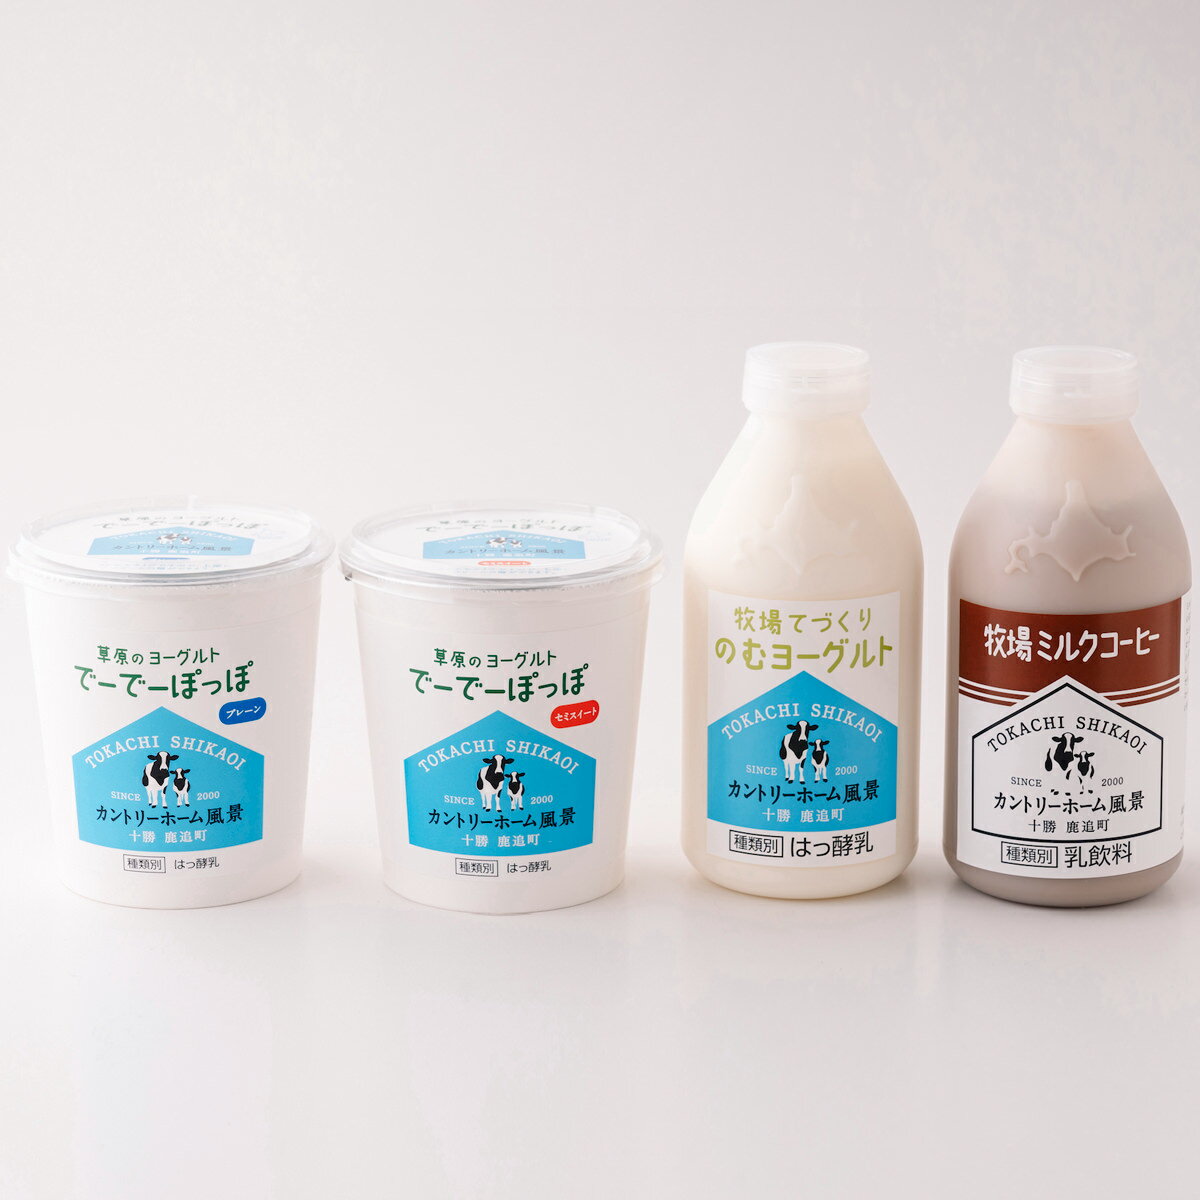 楽天産直お取り寄せニッポンセレクト牧場手づくり乳製品セット リコ 北海道産 ヨーグルト 詰め合わせ 十勝 のむヨーグルト 牧場 乳製品 ミルクコーヒー 北海道グルメ